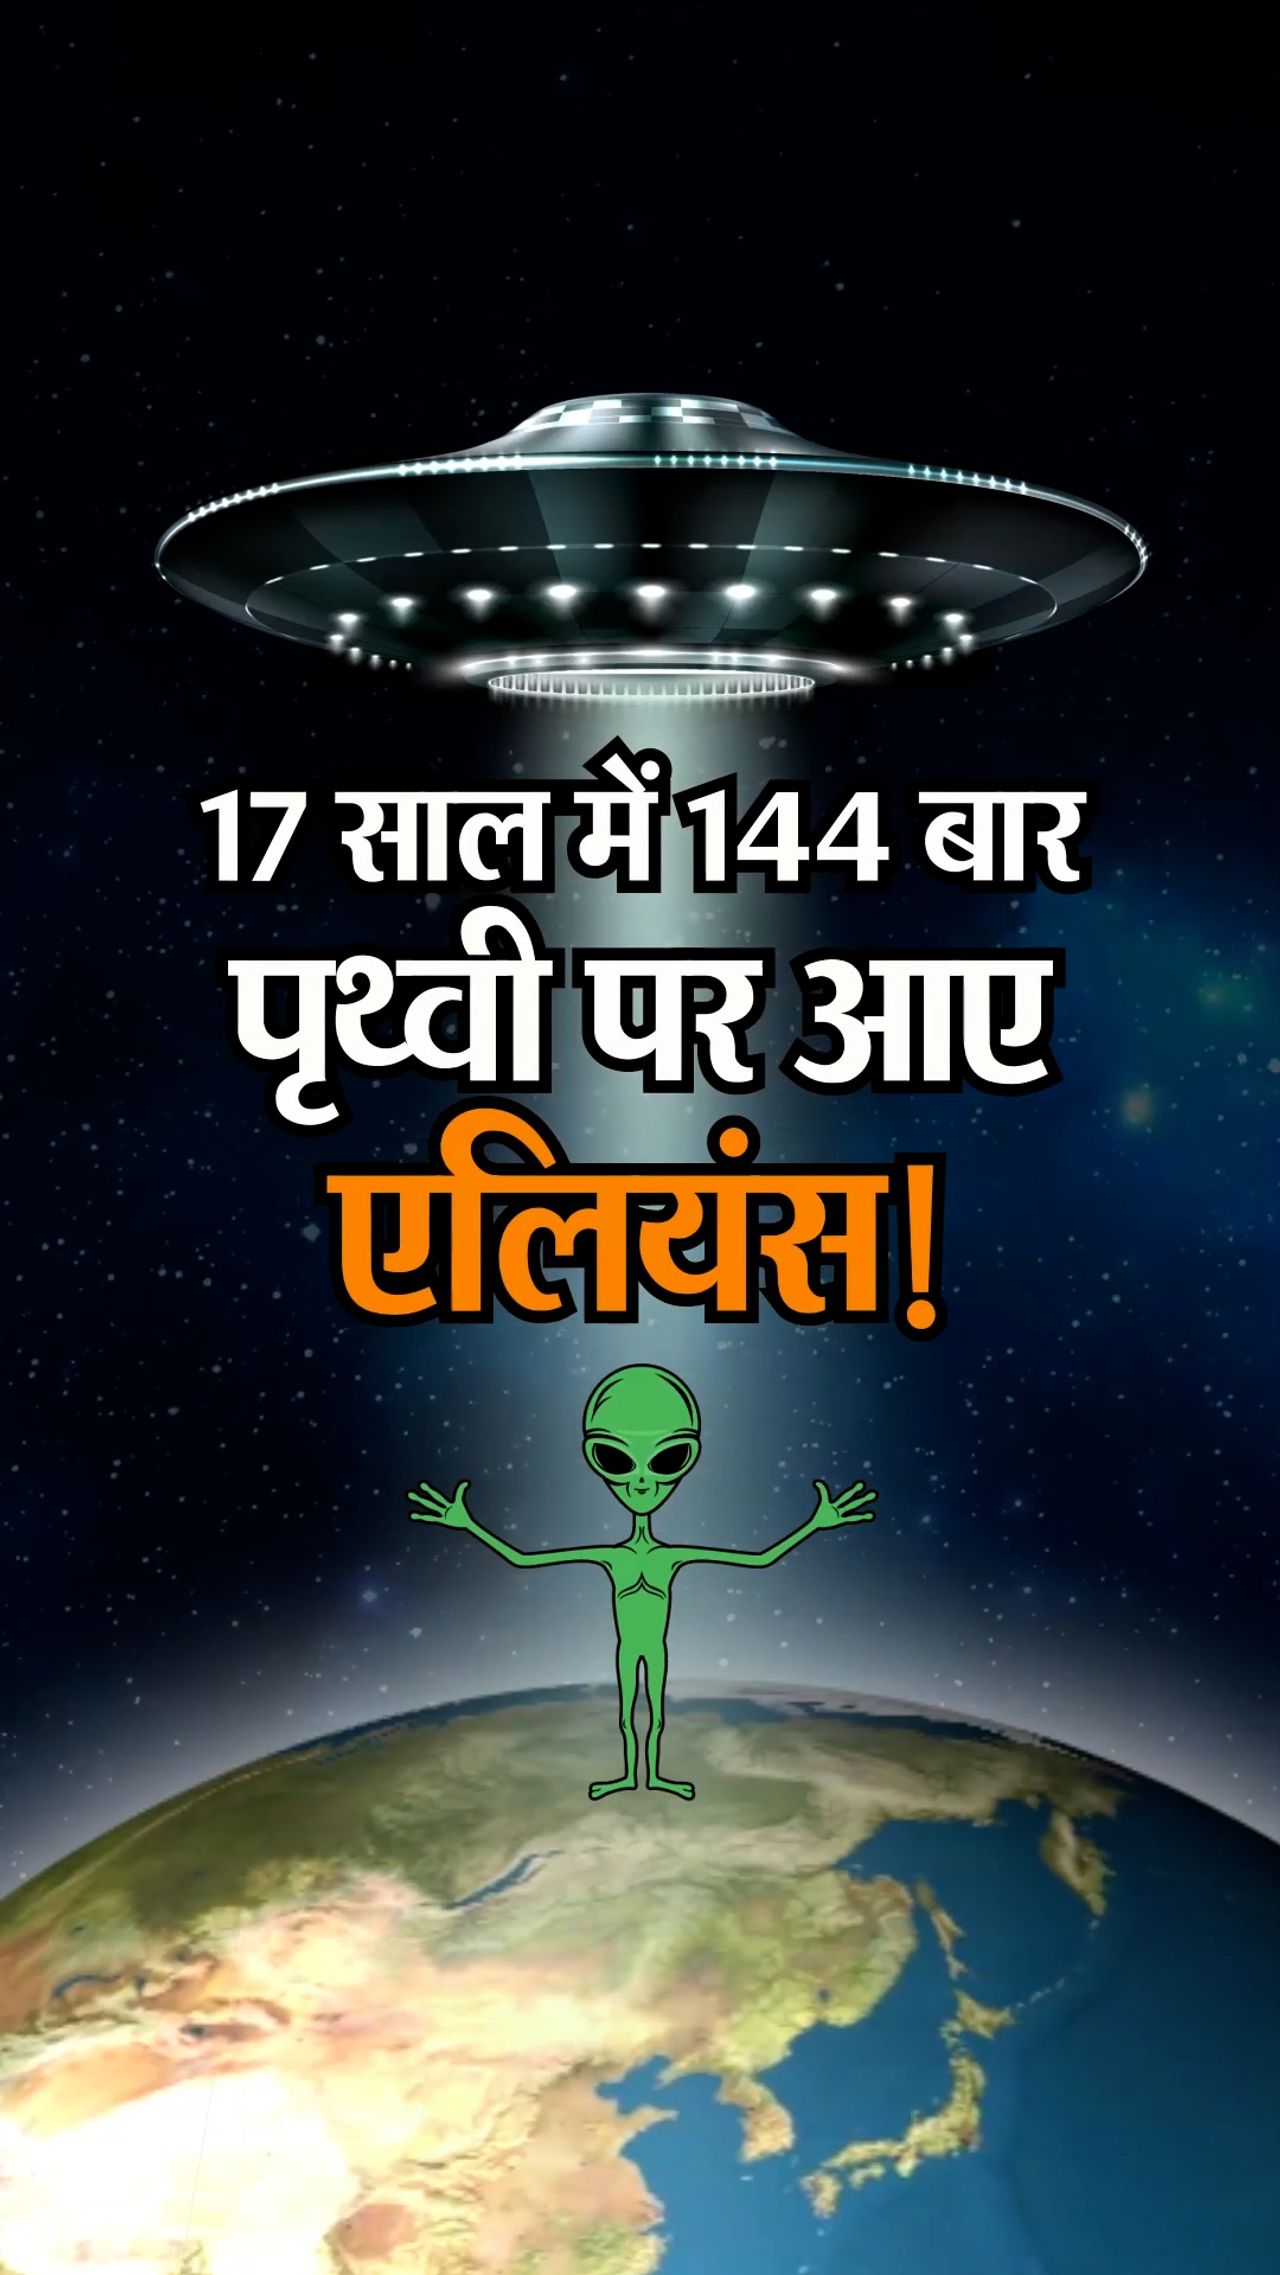 अमेरिका ने माना- 17 साल में धरती पर दिखे 144 UFO, एलियन से भी इंकार नहीं; भारत में भी 1951 से दिख रही हैं ‘उड़न तश्तरियां’